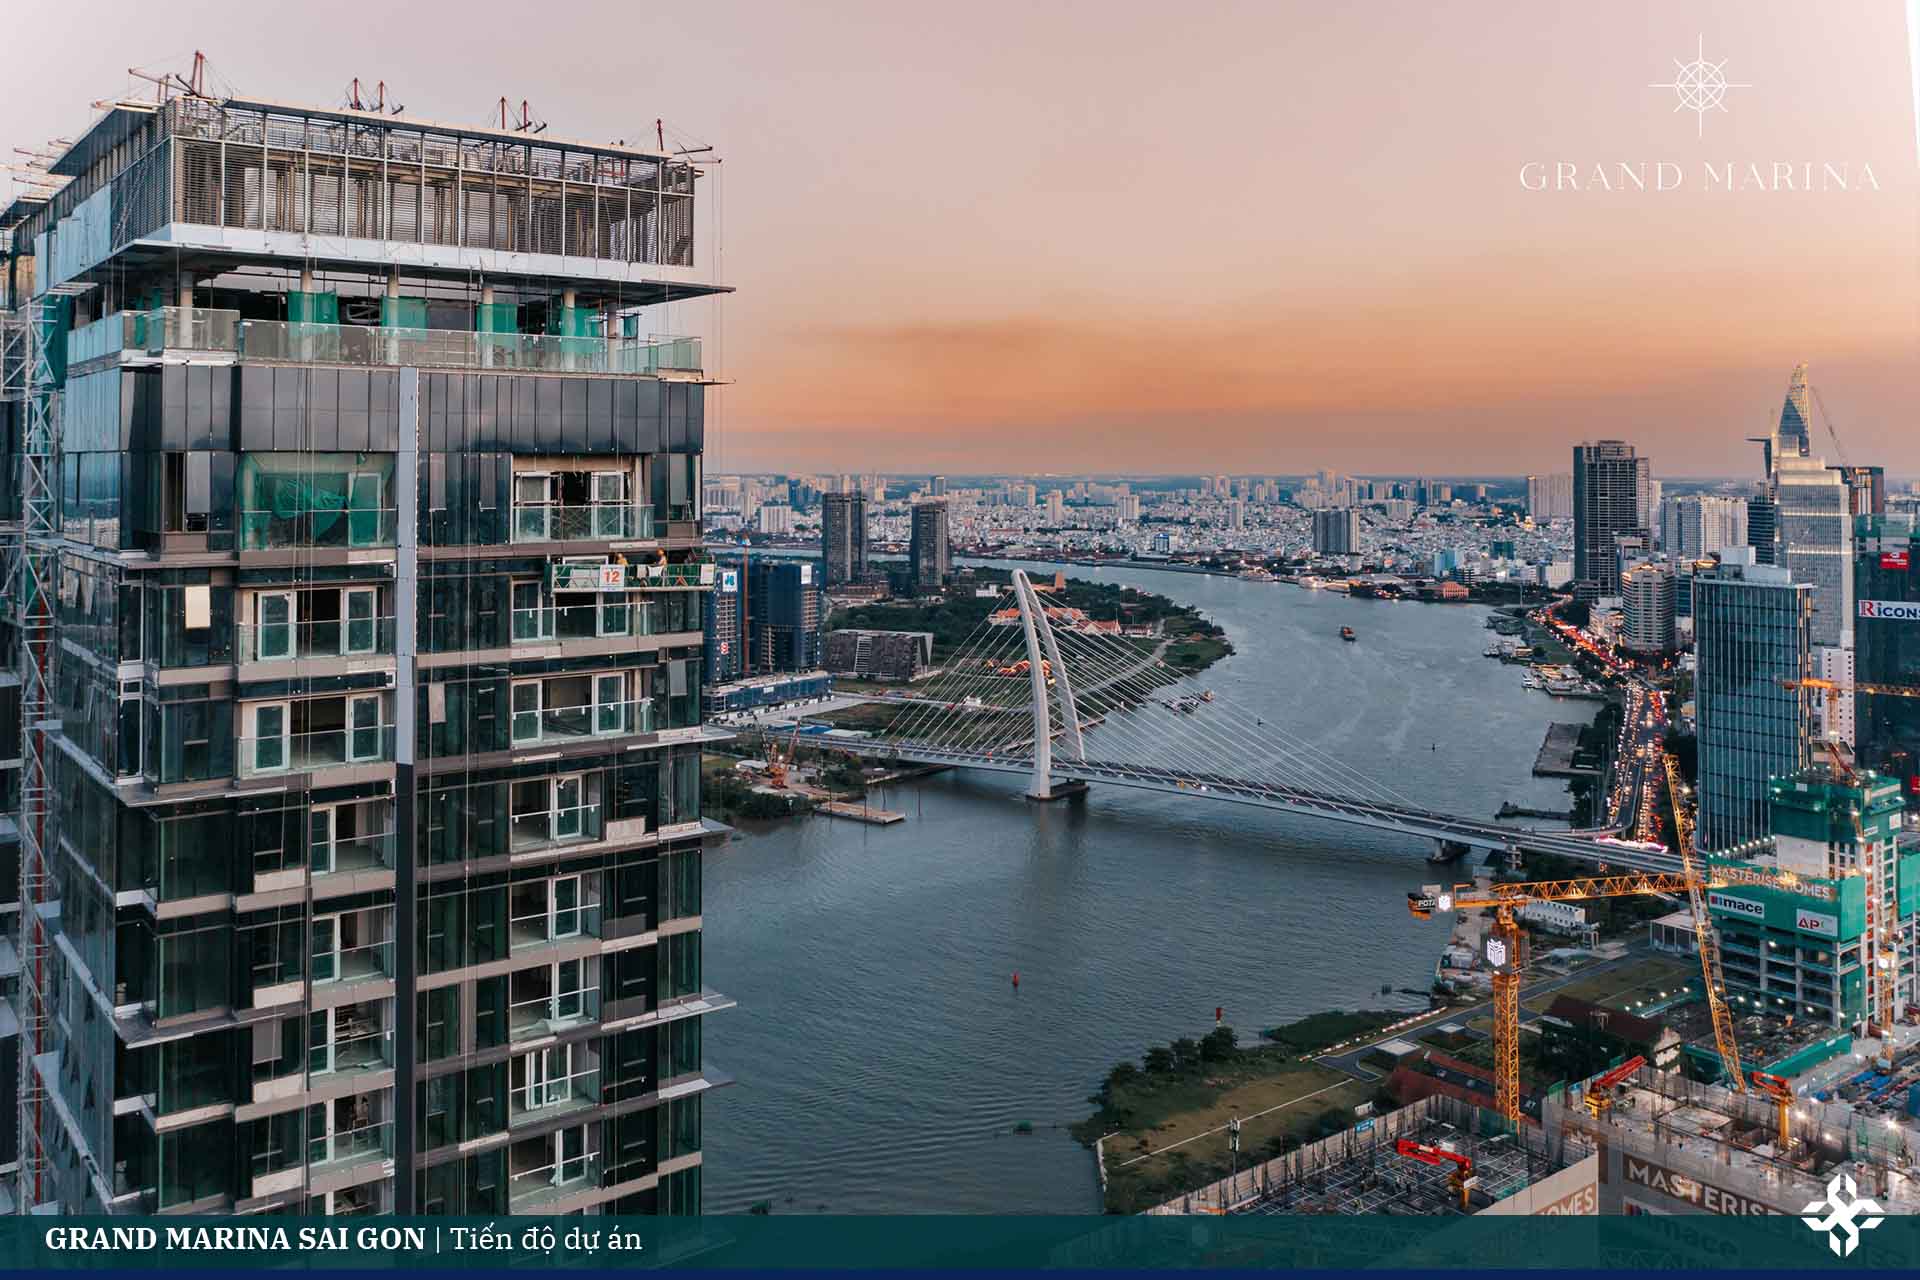 Grand Marina Saigon | Tiến độ dự án căn hộ hàng hiệu Mariott Bason.